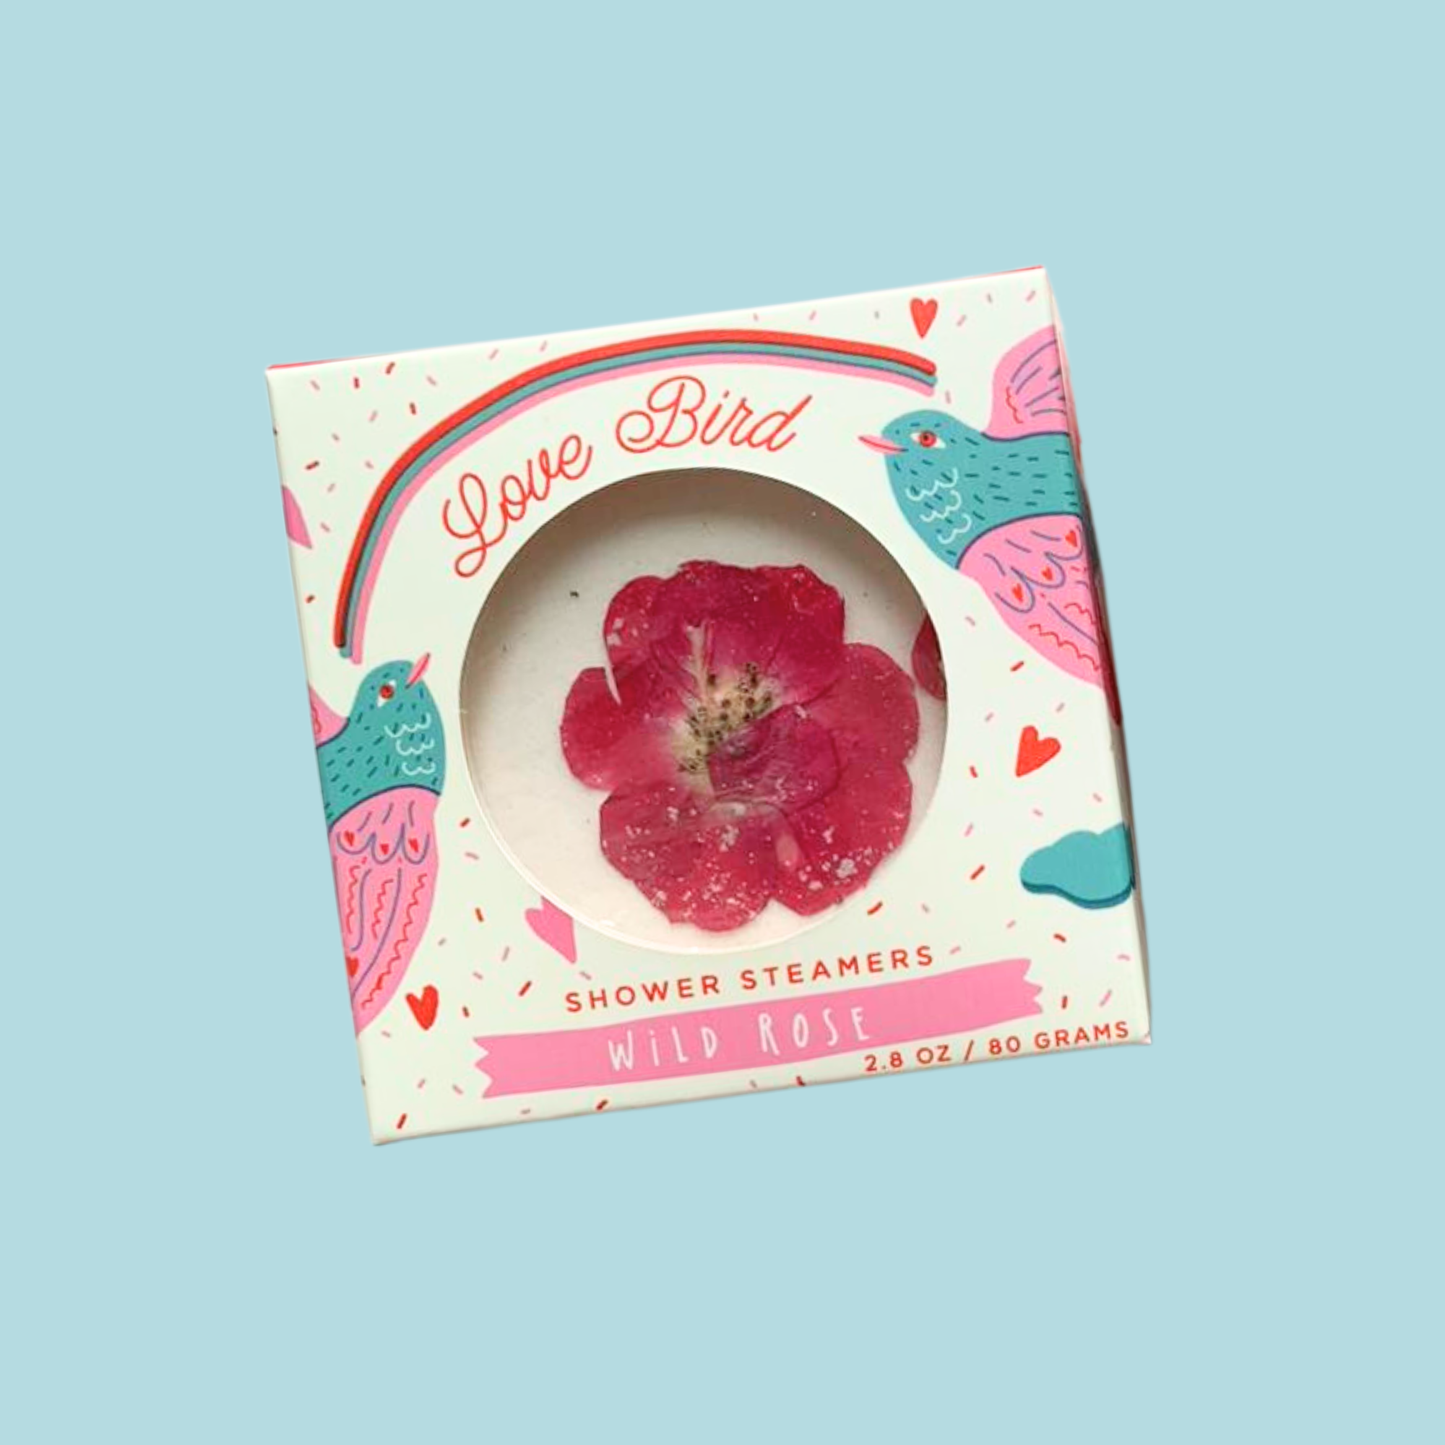 Sow the Magic - Love Bird Wild Rose Shower Steamer Set